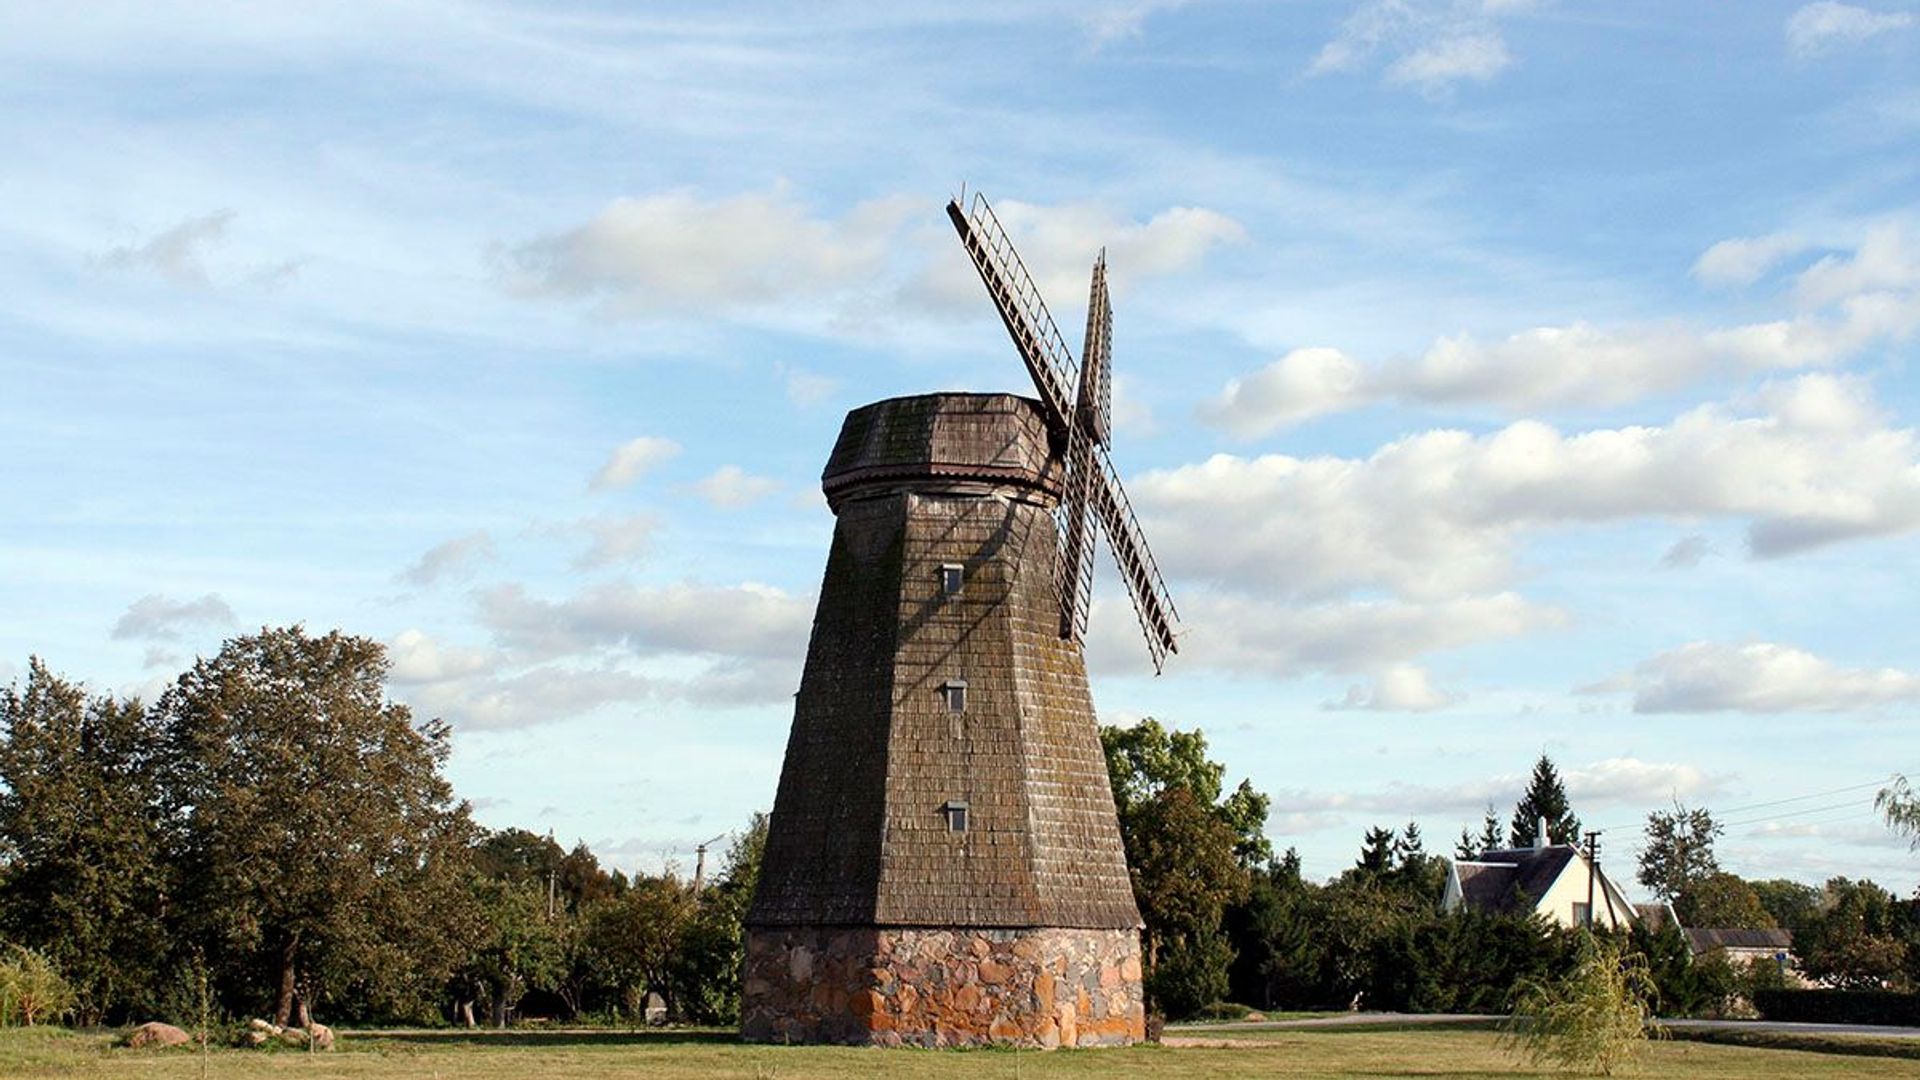 Stačiūnai Windmill